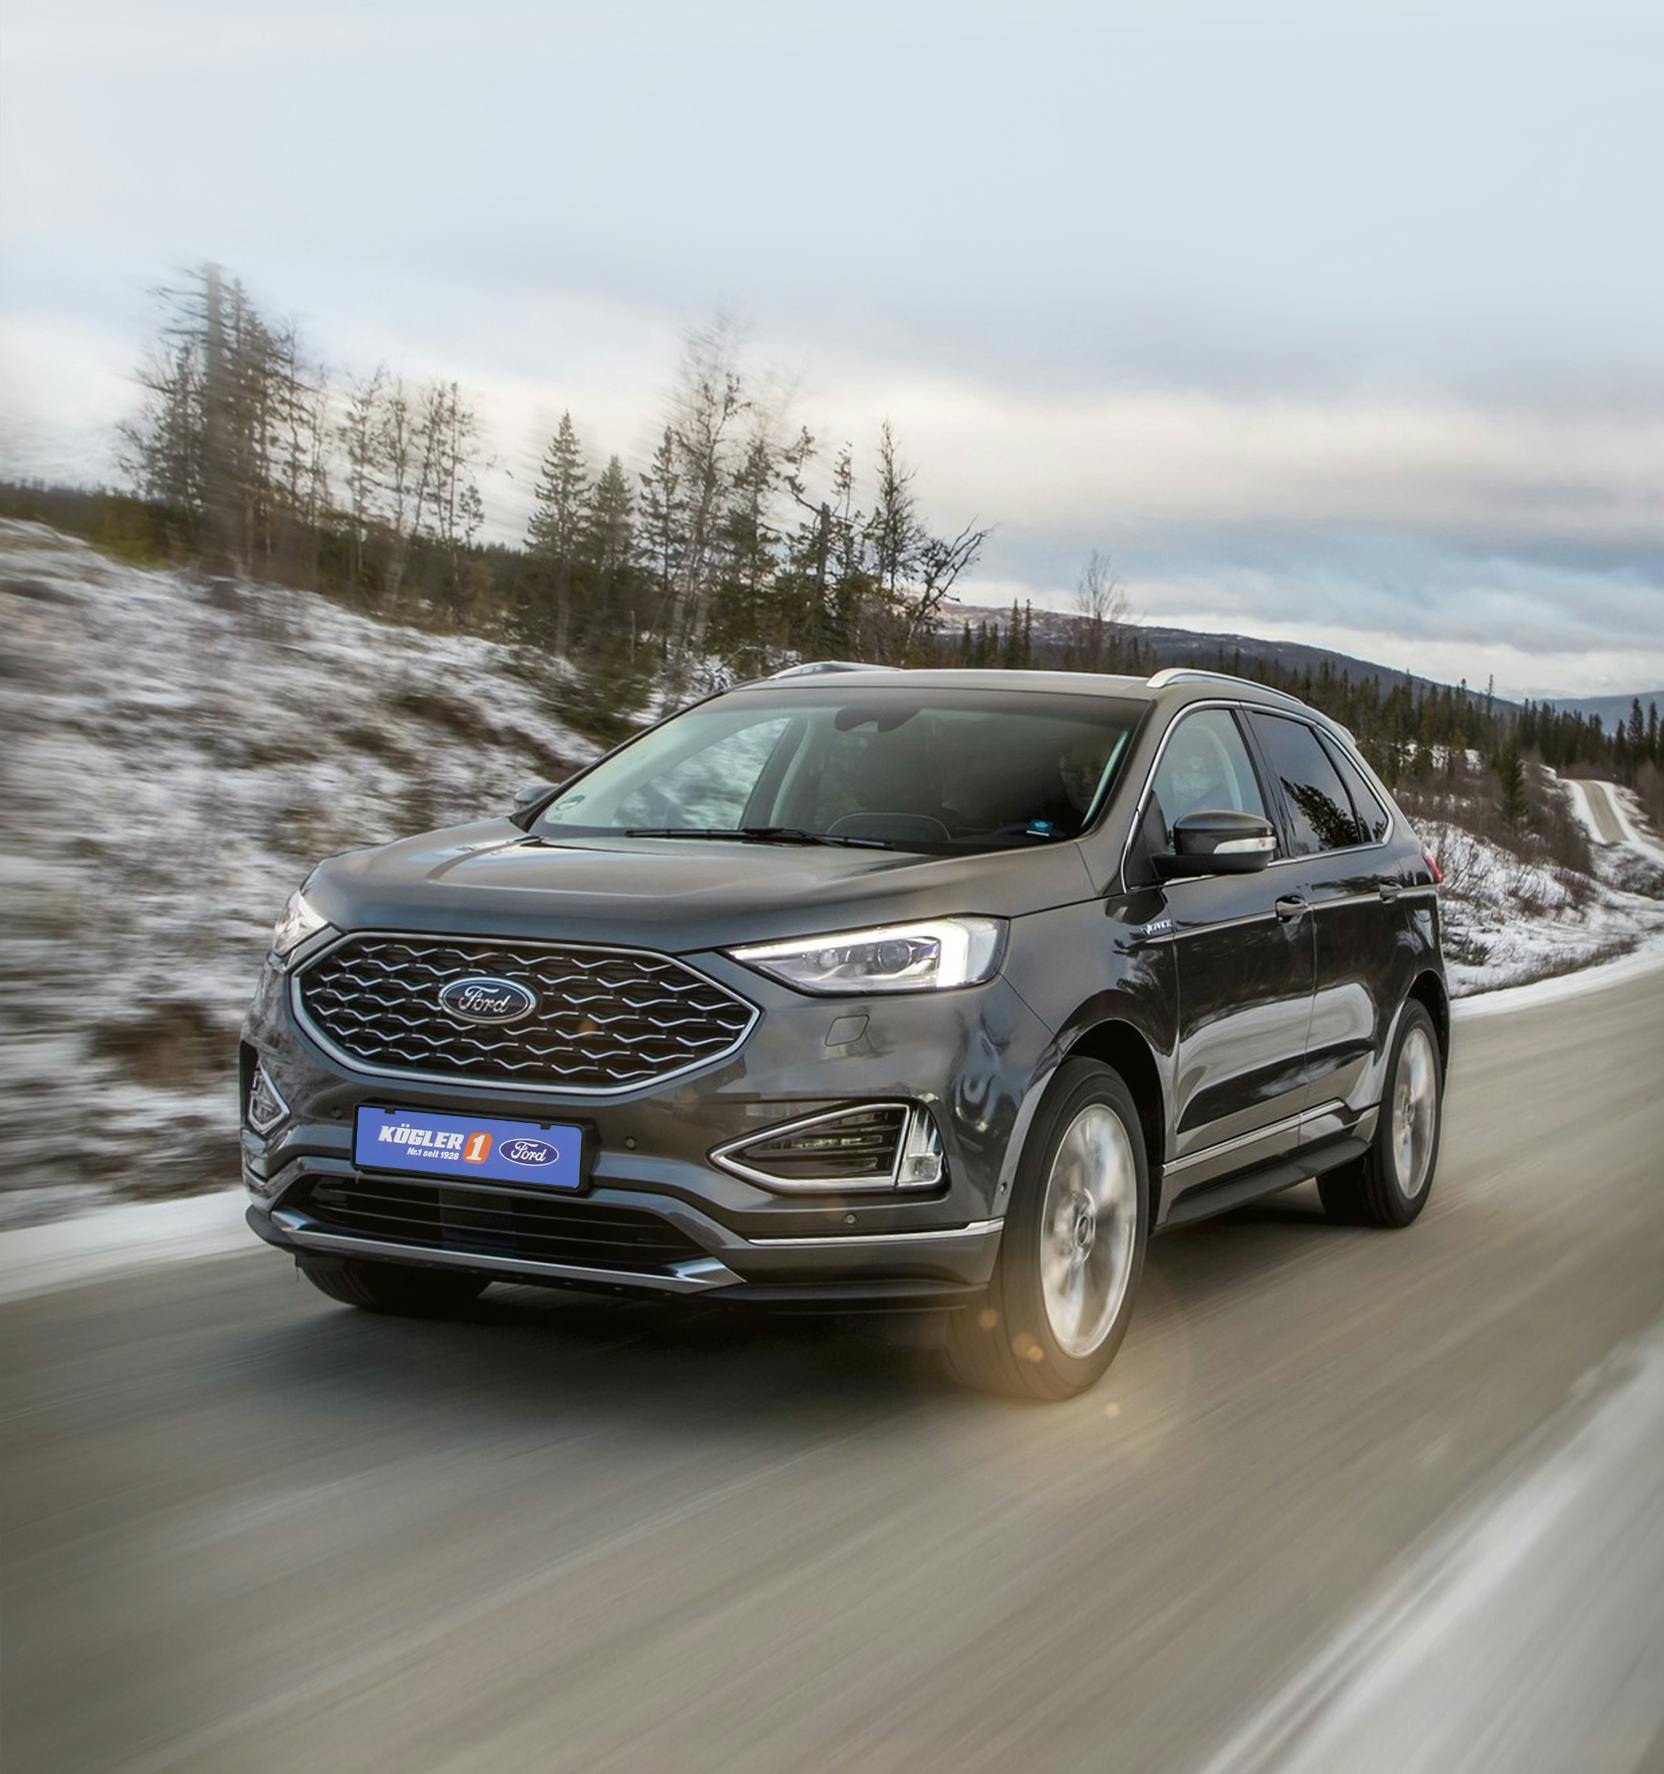 Ford Edge gebraucht kaufen  Gebrauchtwagen in Deutschland suchen & finden